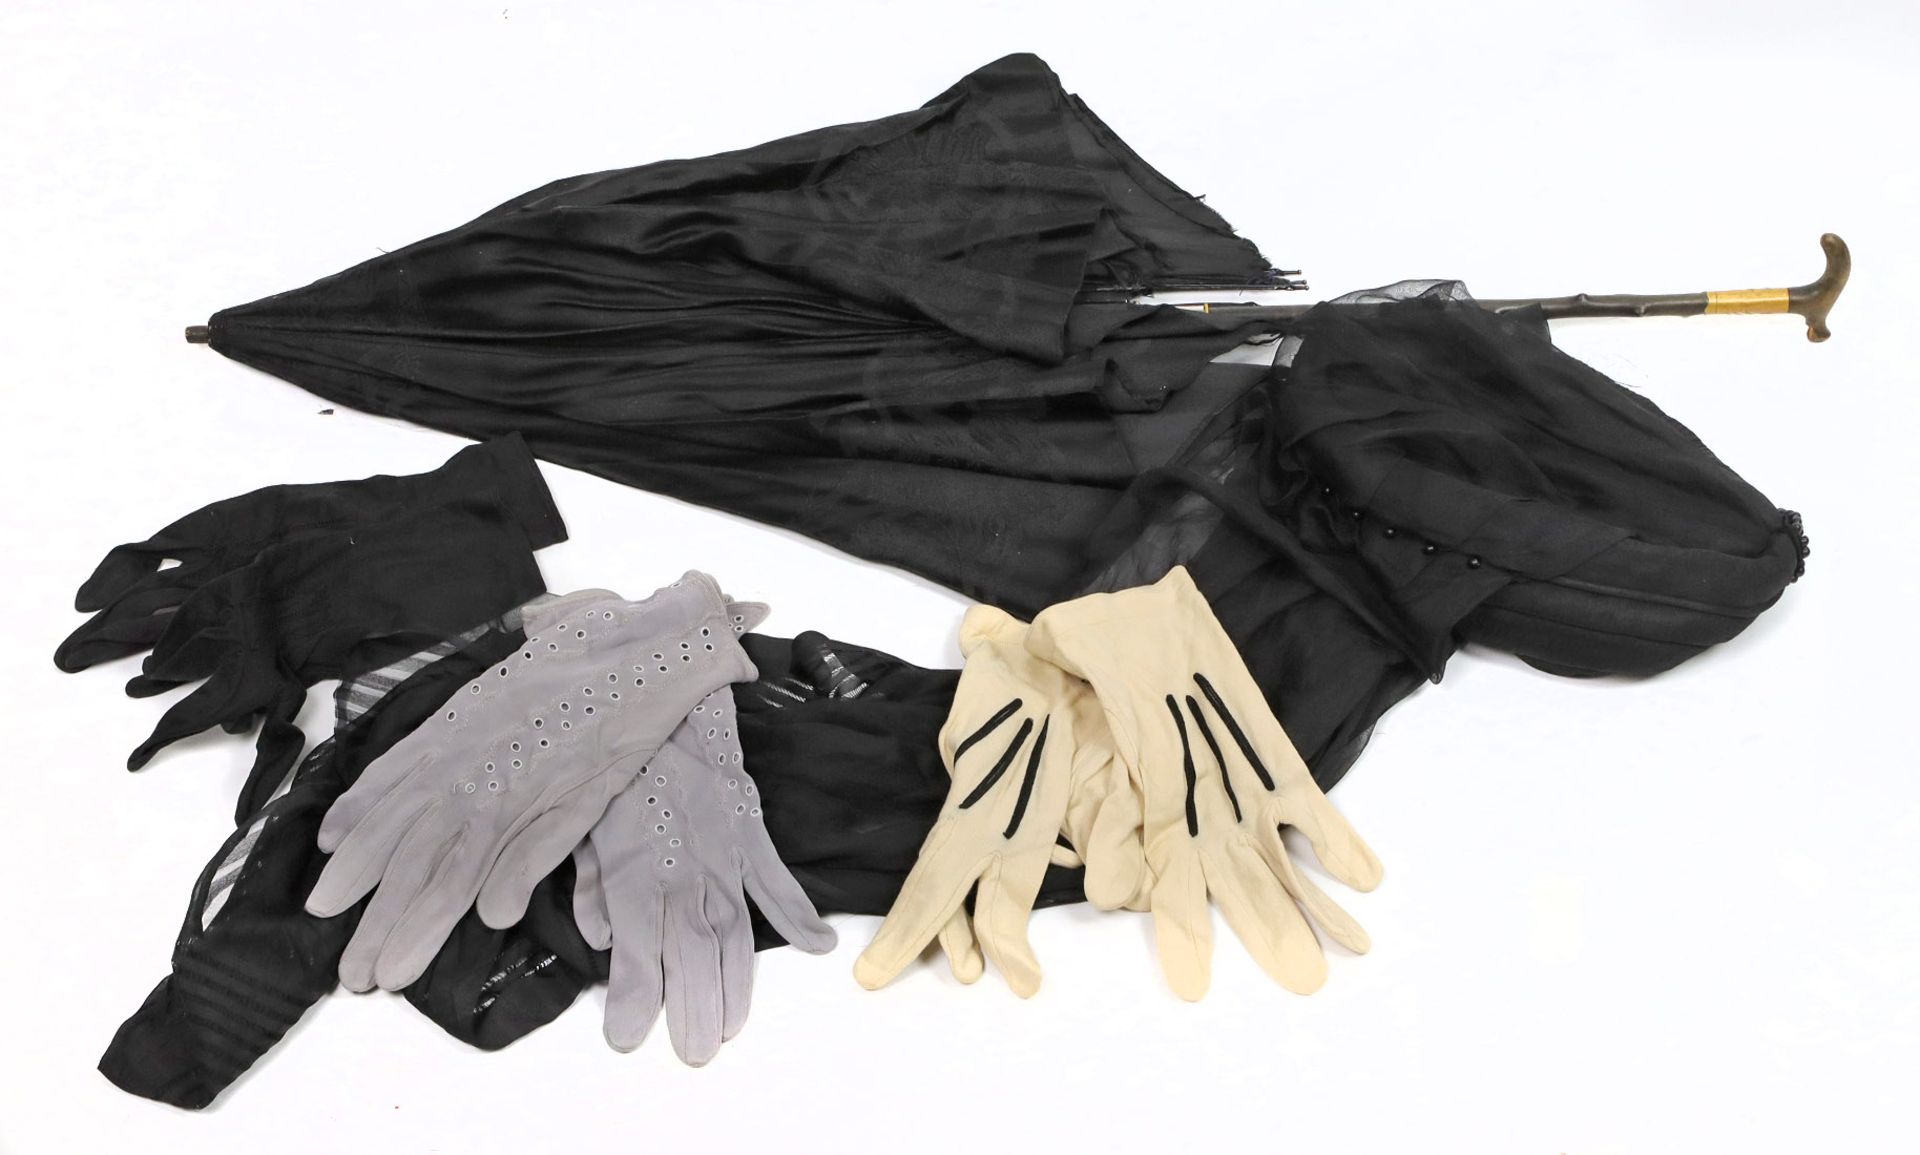 schwarze Damengarderobe um 1930dabei Kleid mit schmal geschnittenem, schulterbedecktem Oberteil, - Bild 2 aus 2